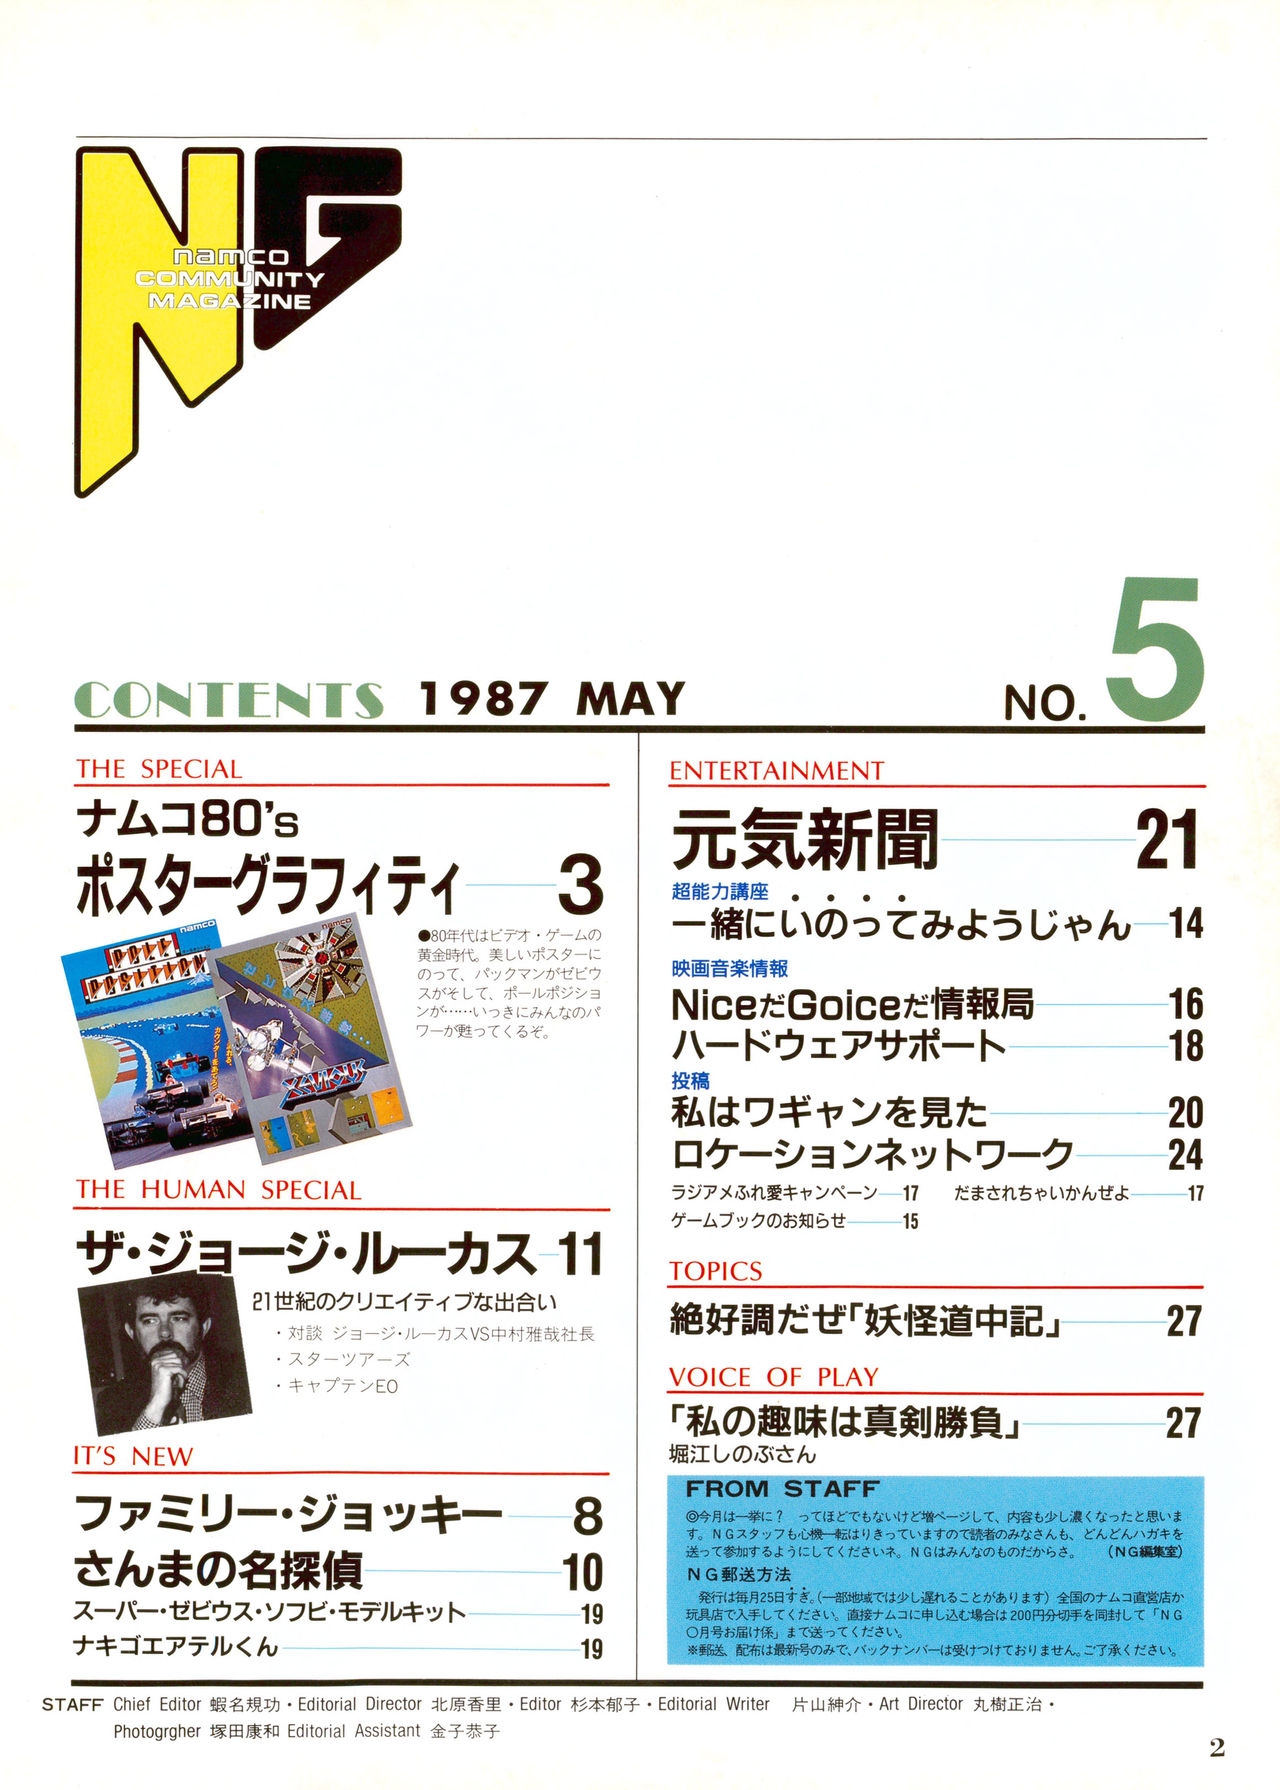 NG Namco Community Magazine 07 1